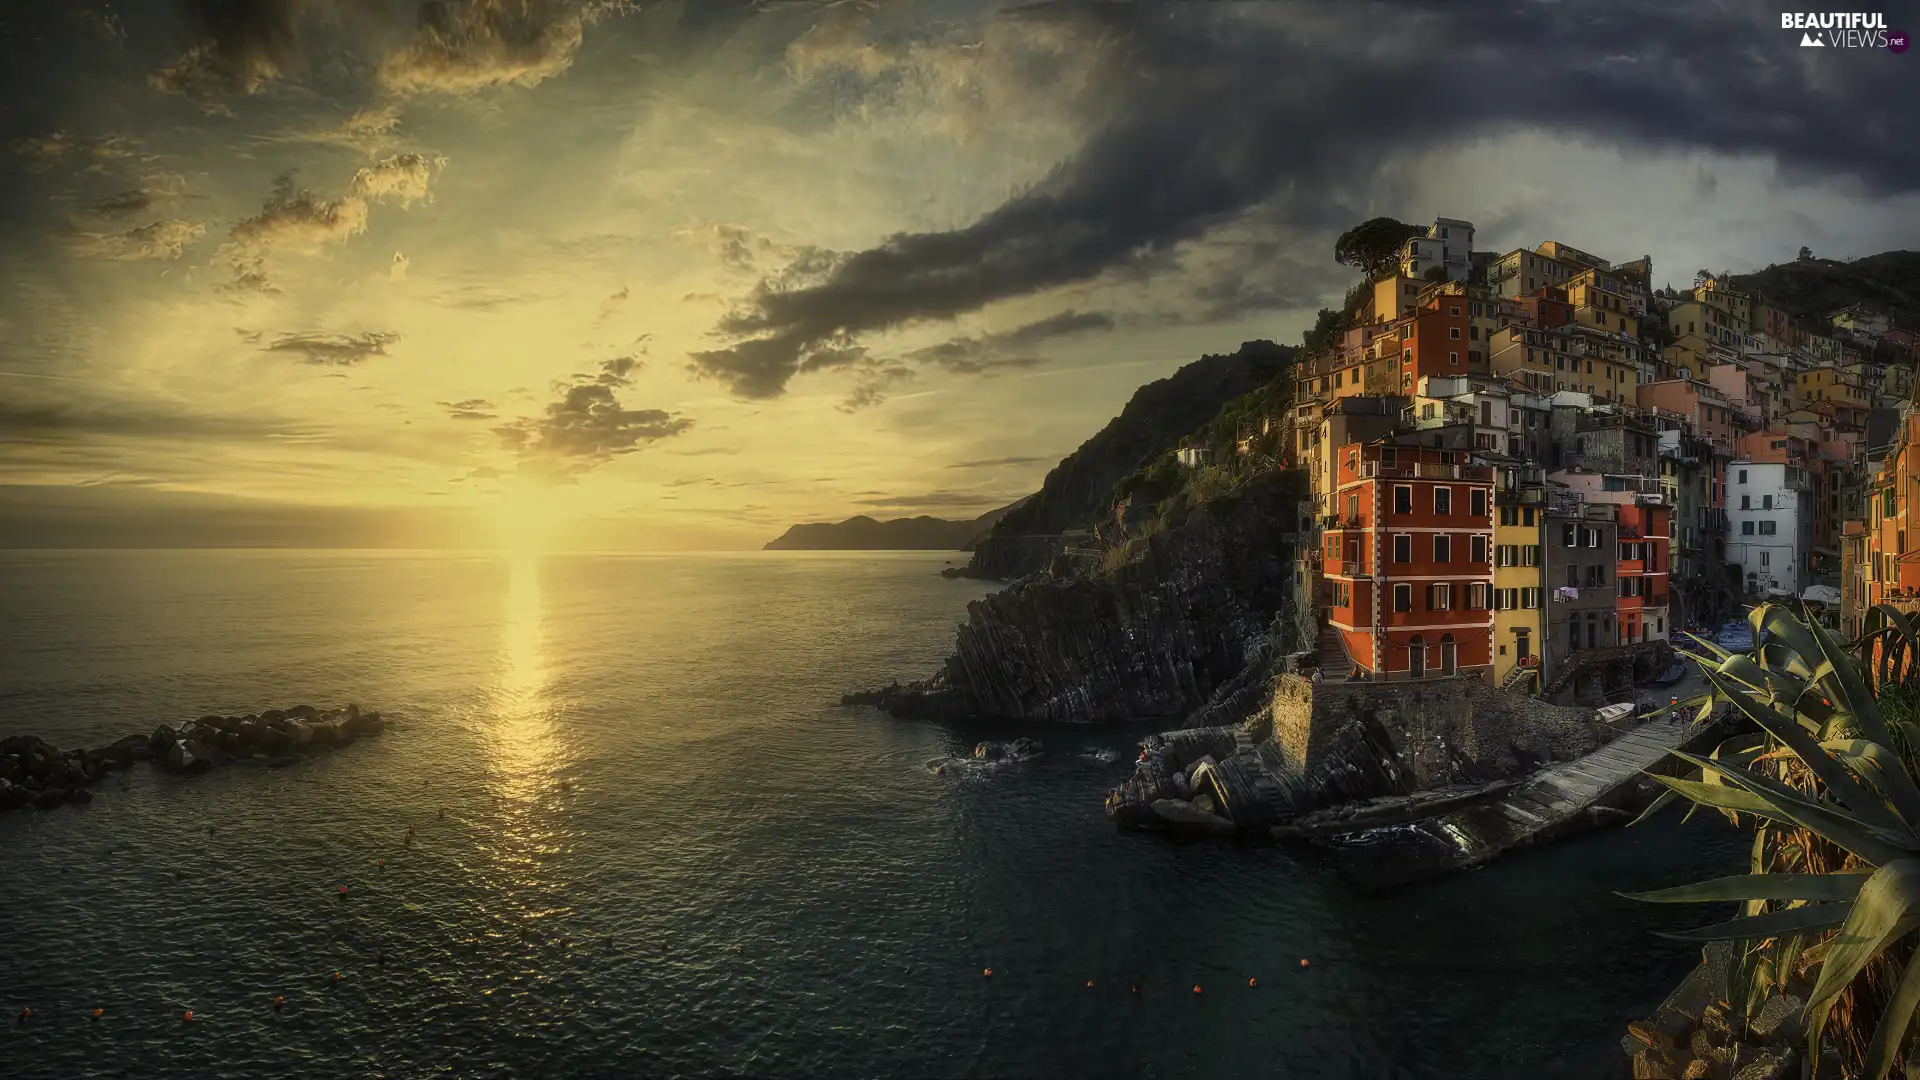 Ligurian Sea, Province of La Spezia, Houses, Riomaggiore, Italy, color, Great Sunsets